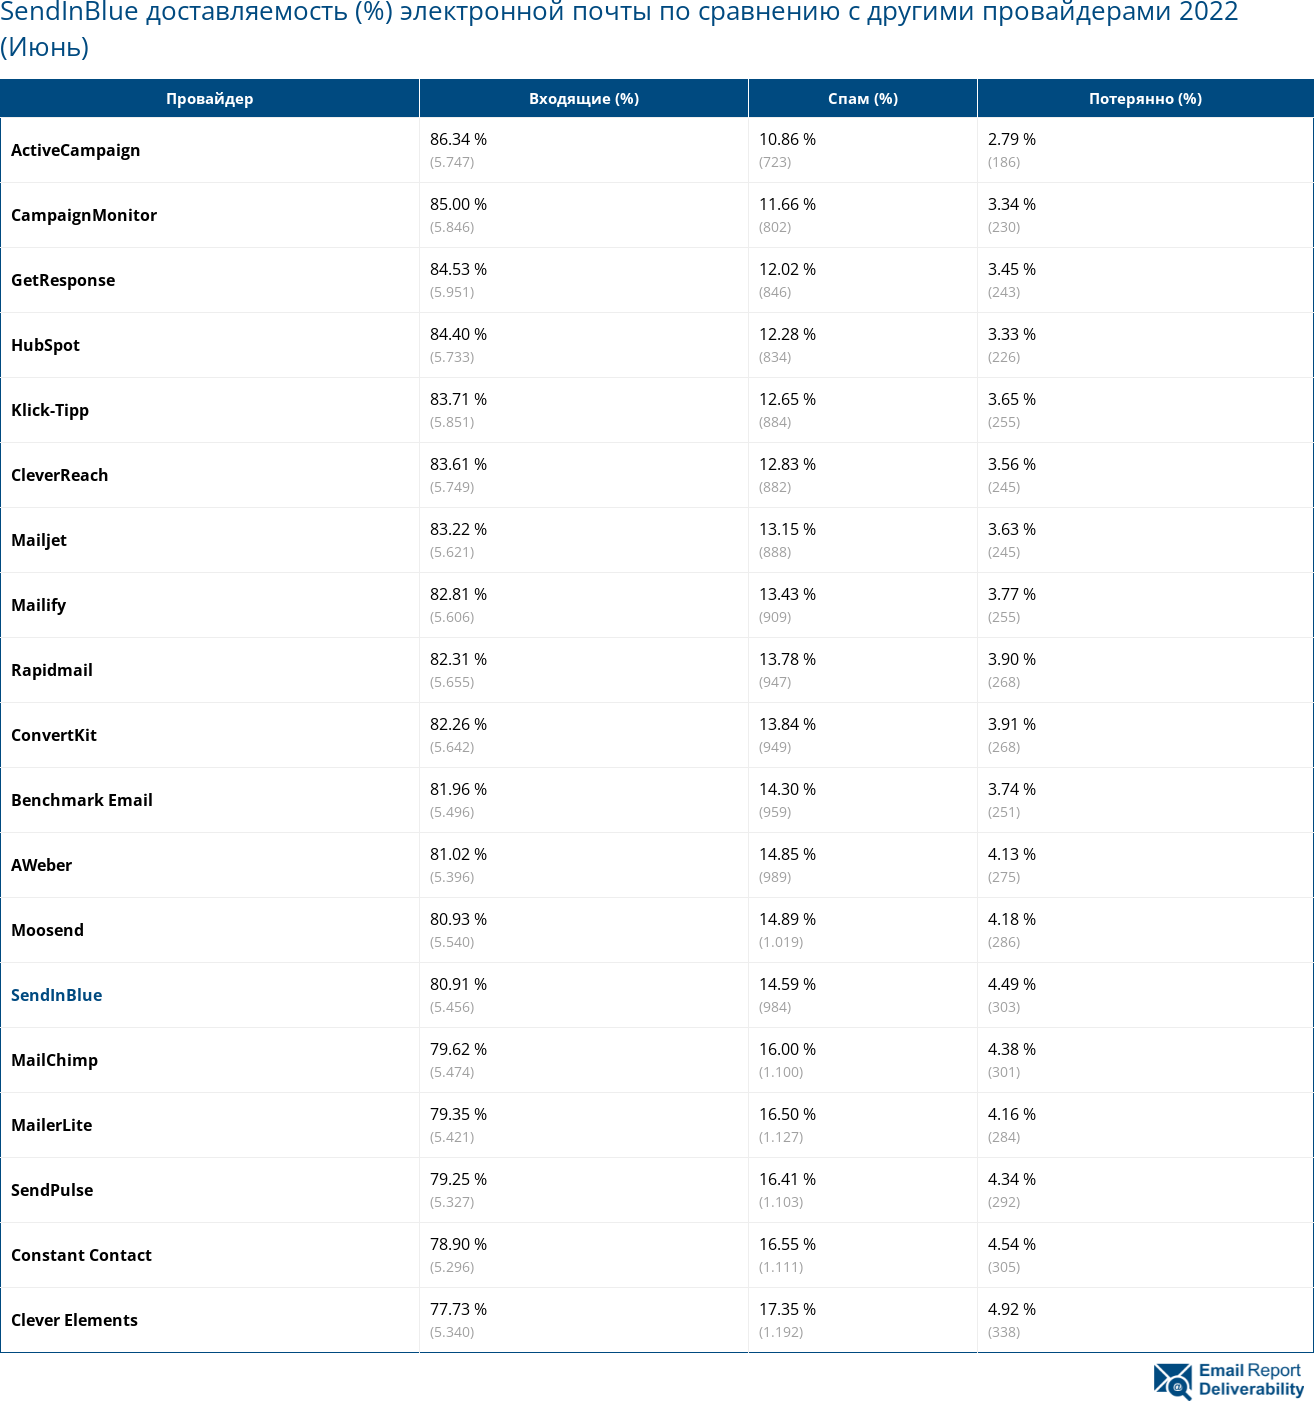 SendInBlue доставляемость (%) электронной почты по сравнению с другими провайдерами 2022 (Июнь)